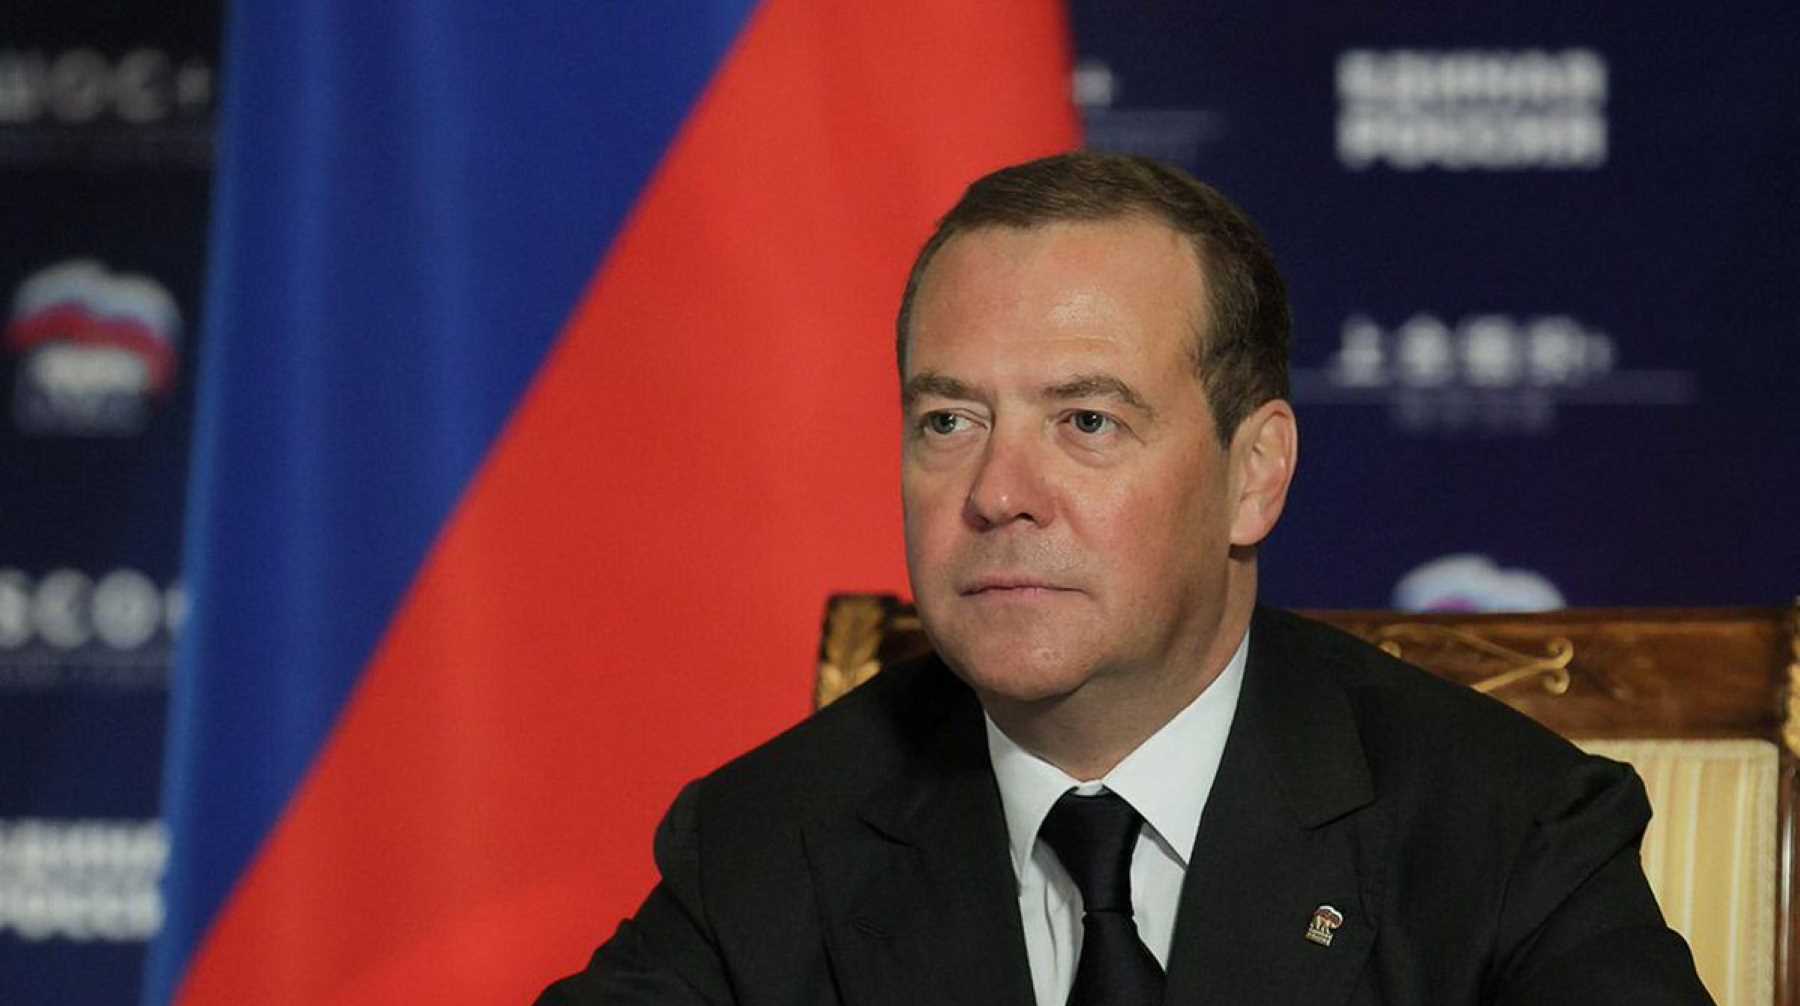 Замглавы Совбеза считает оппозиционера «политическим проходимцем» Фото: © Global Look Press / Dmitry Medvedev